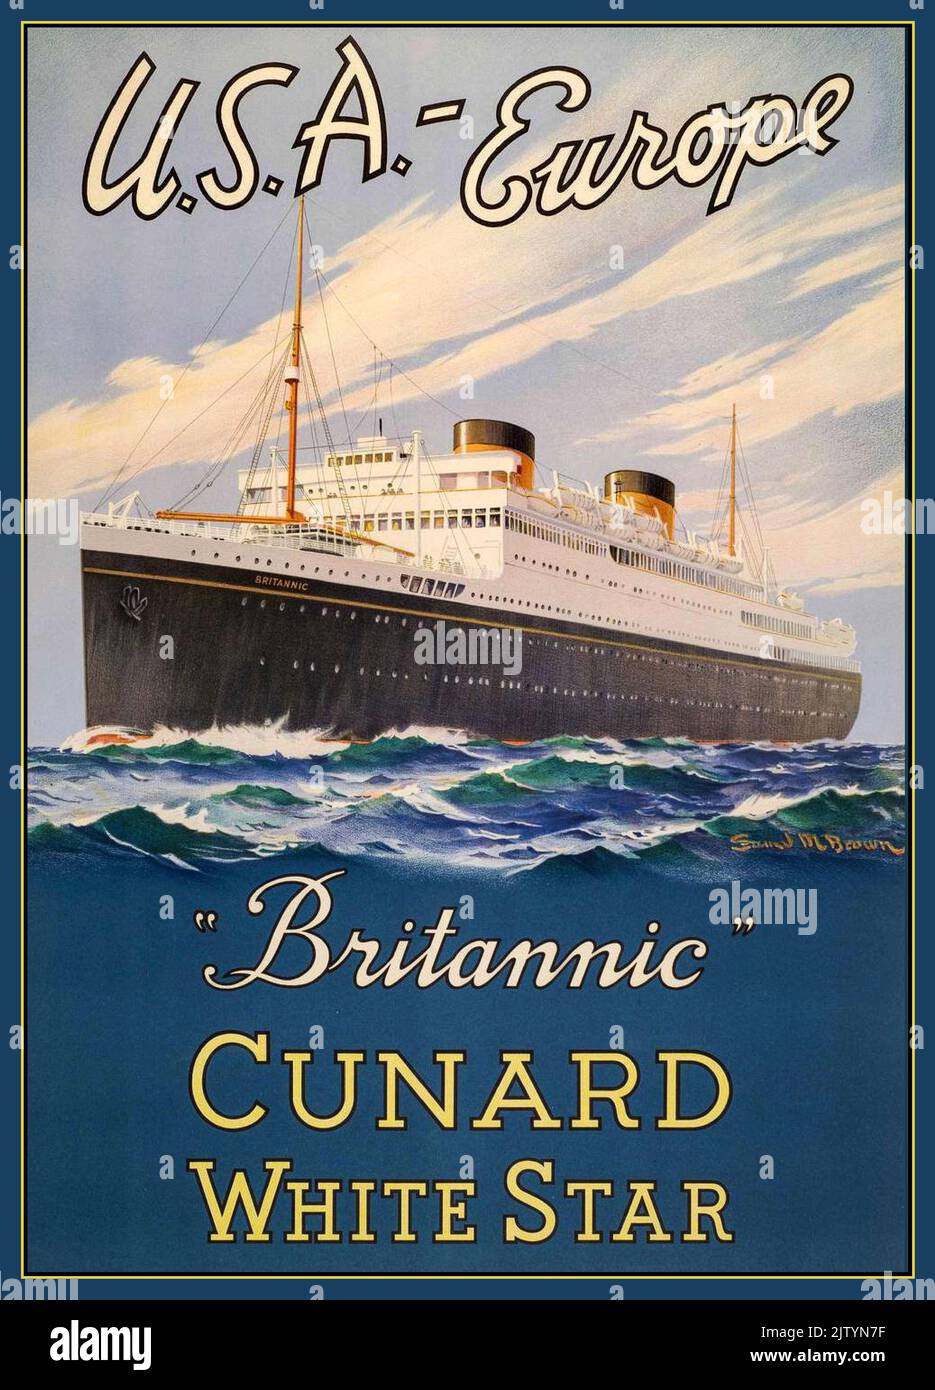 CUNARD BRITANNIC Vintage navire de croisière des années 1930 Ocean Liner Cunard ‘Brittanic’ White Star Line USA-Europe MV Brittanic Cunard Ocean Liner sous le drapeau blanc USA-Europe Banque D'Images